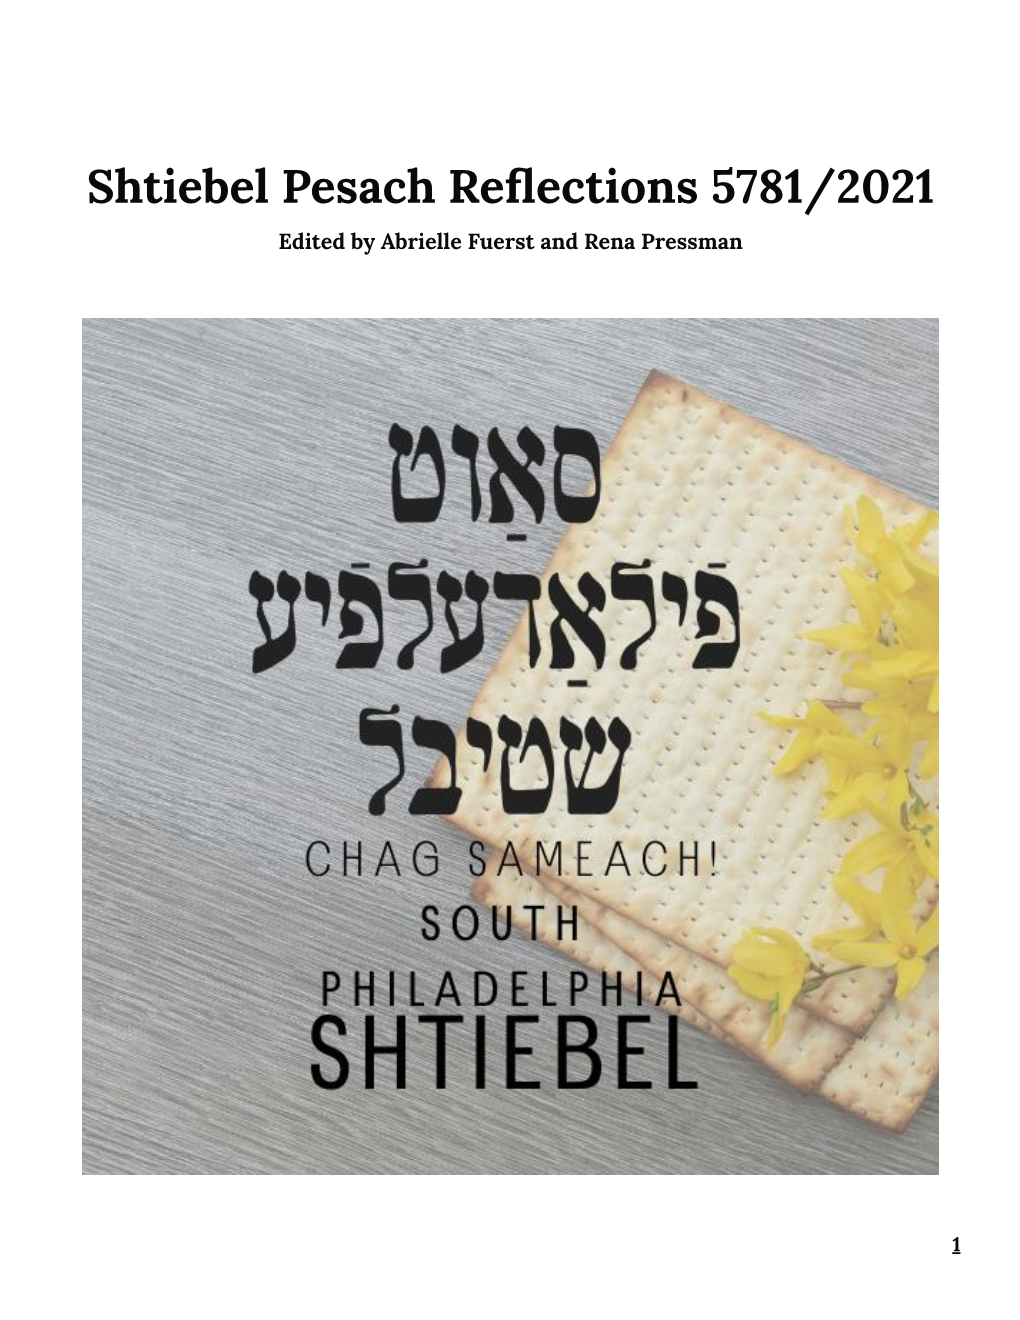 Shtiebel Pesach Reader 2021